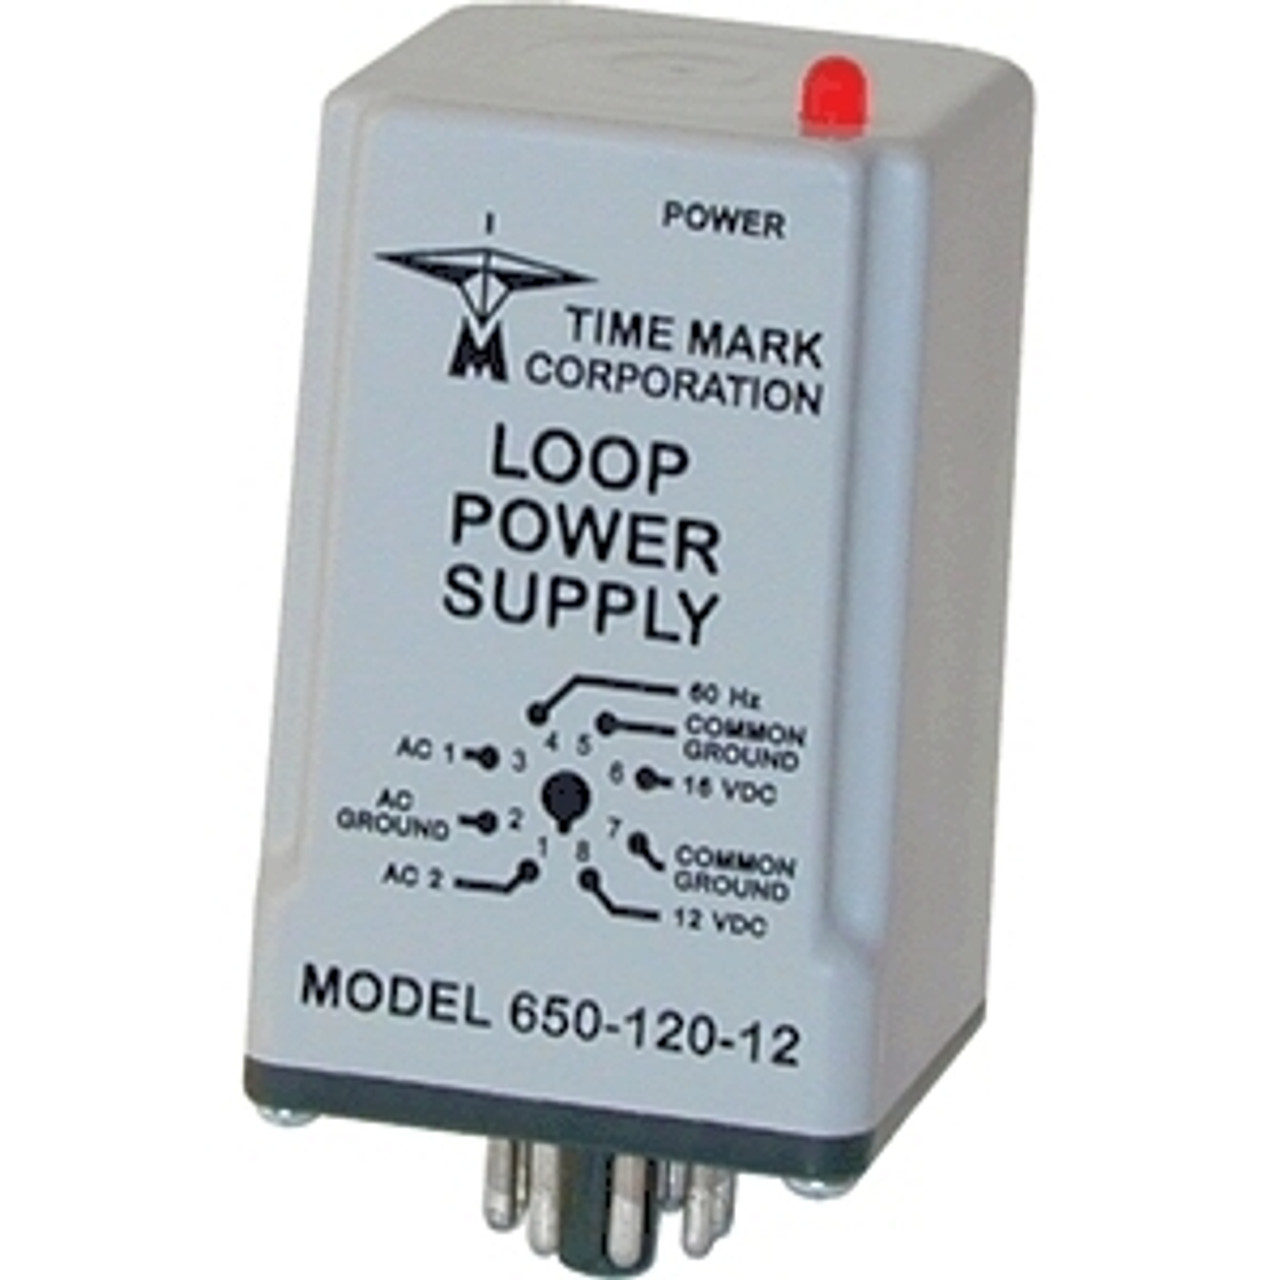 TimeMark 650-240-12 Loop Power Supplies